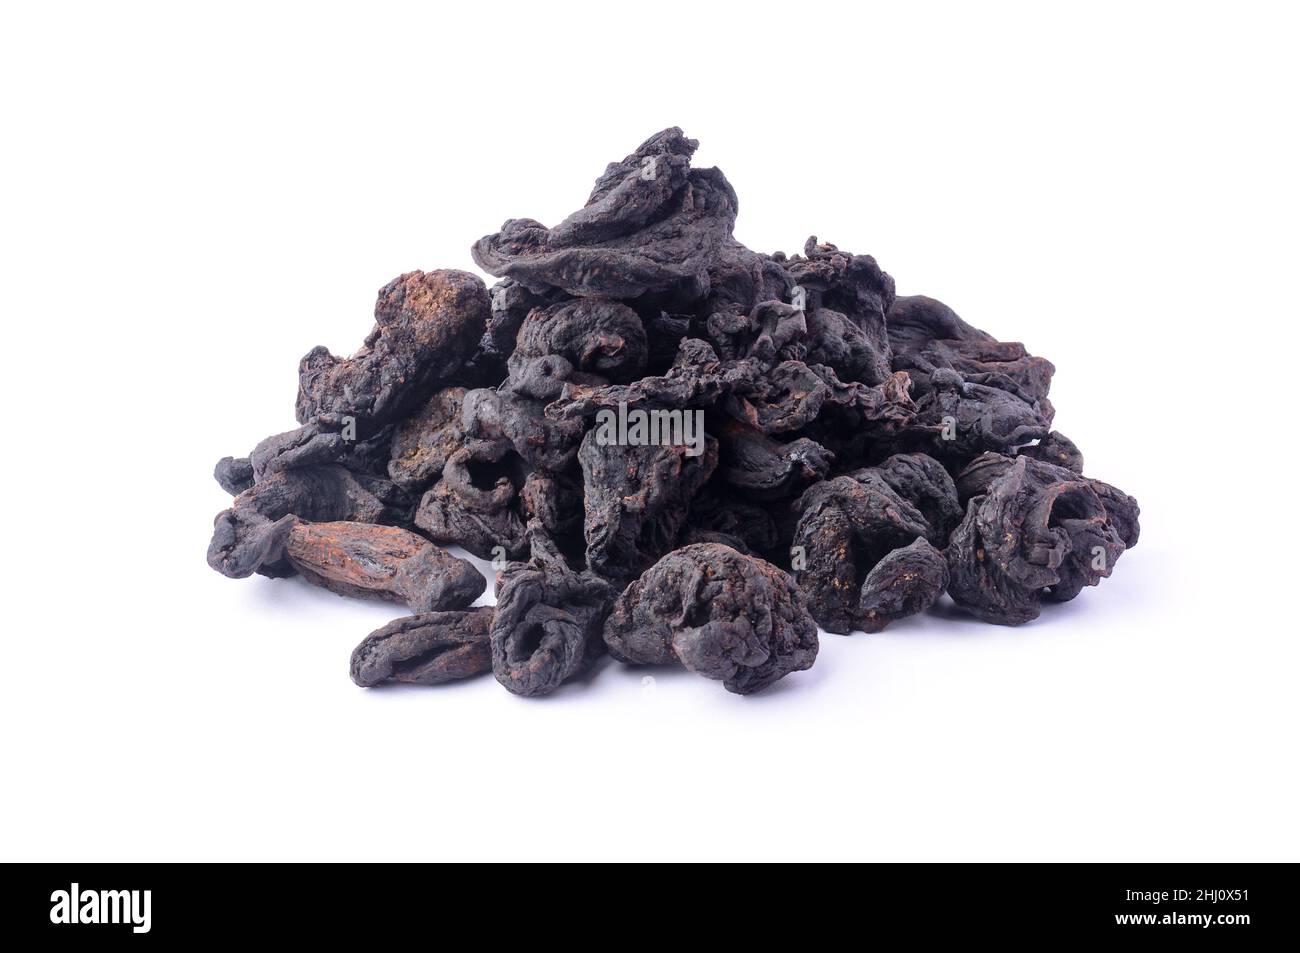 Haufen von sonnengetrockneten Garcinia-Früchten, schwarz geschrumpfte Aromakräuter aus südasien, auch bekannt als brindlige Beere, Goraka oder malabar Tamarind, isola Stockfoto